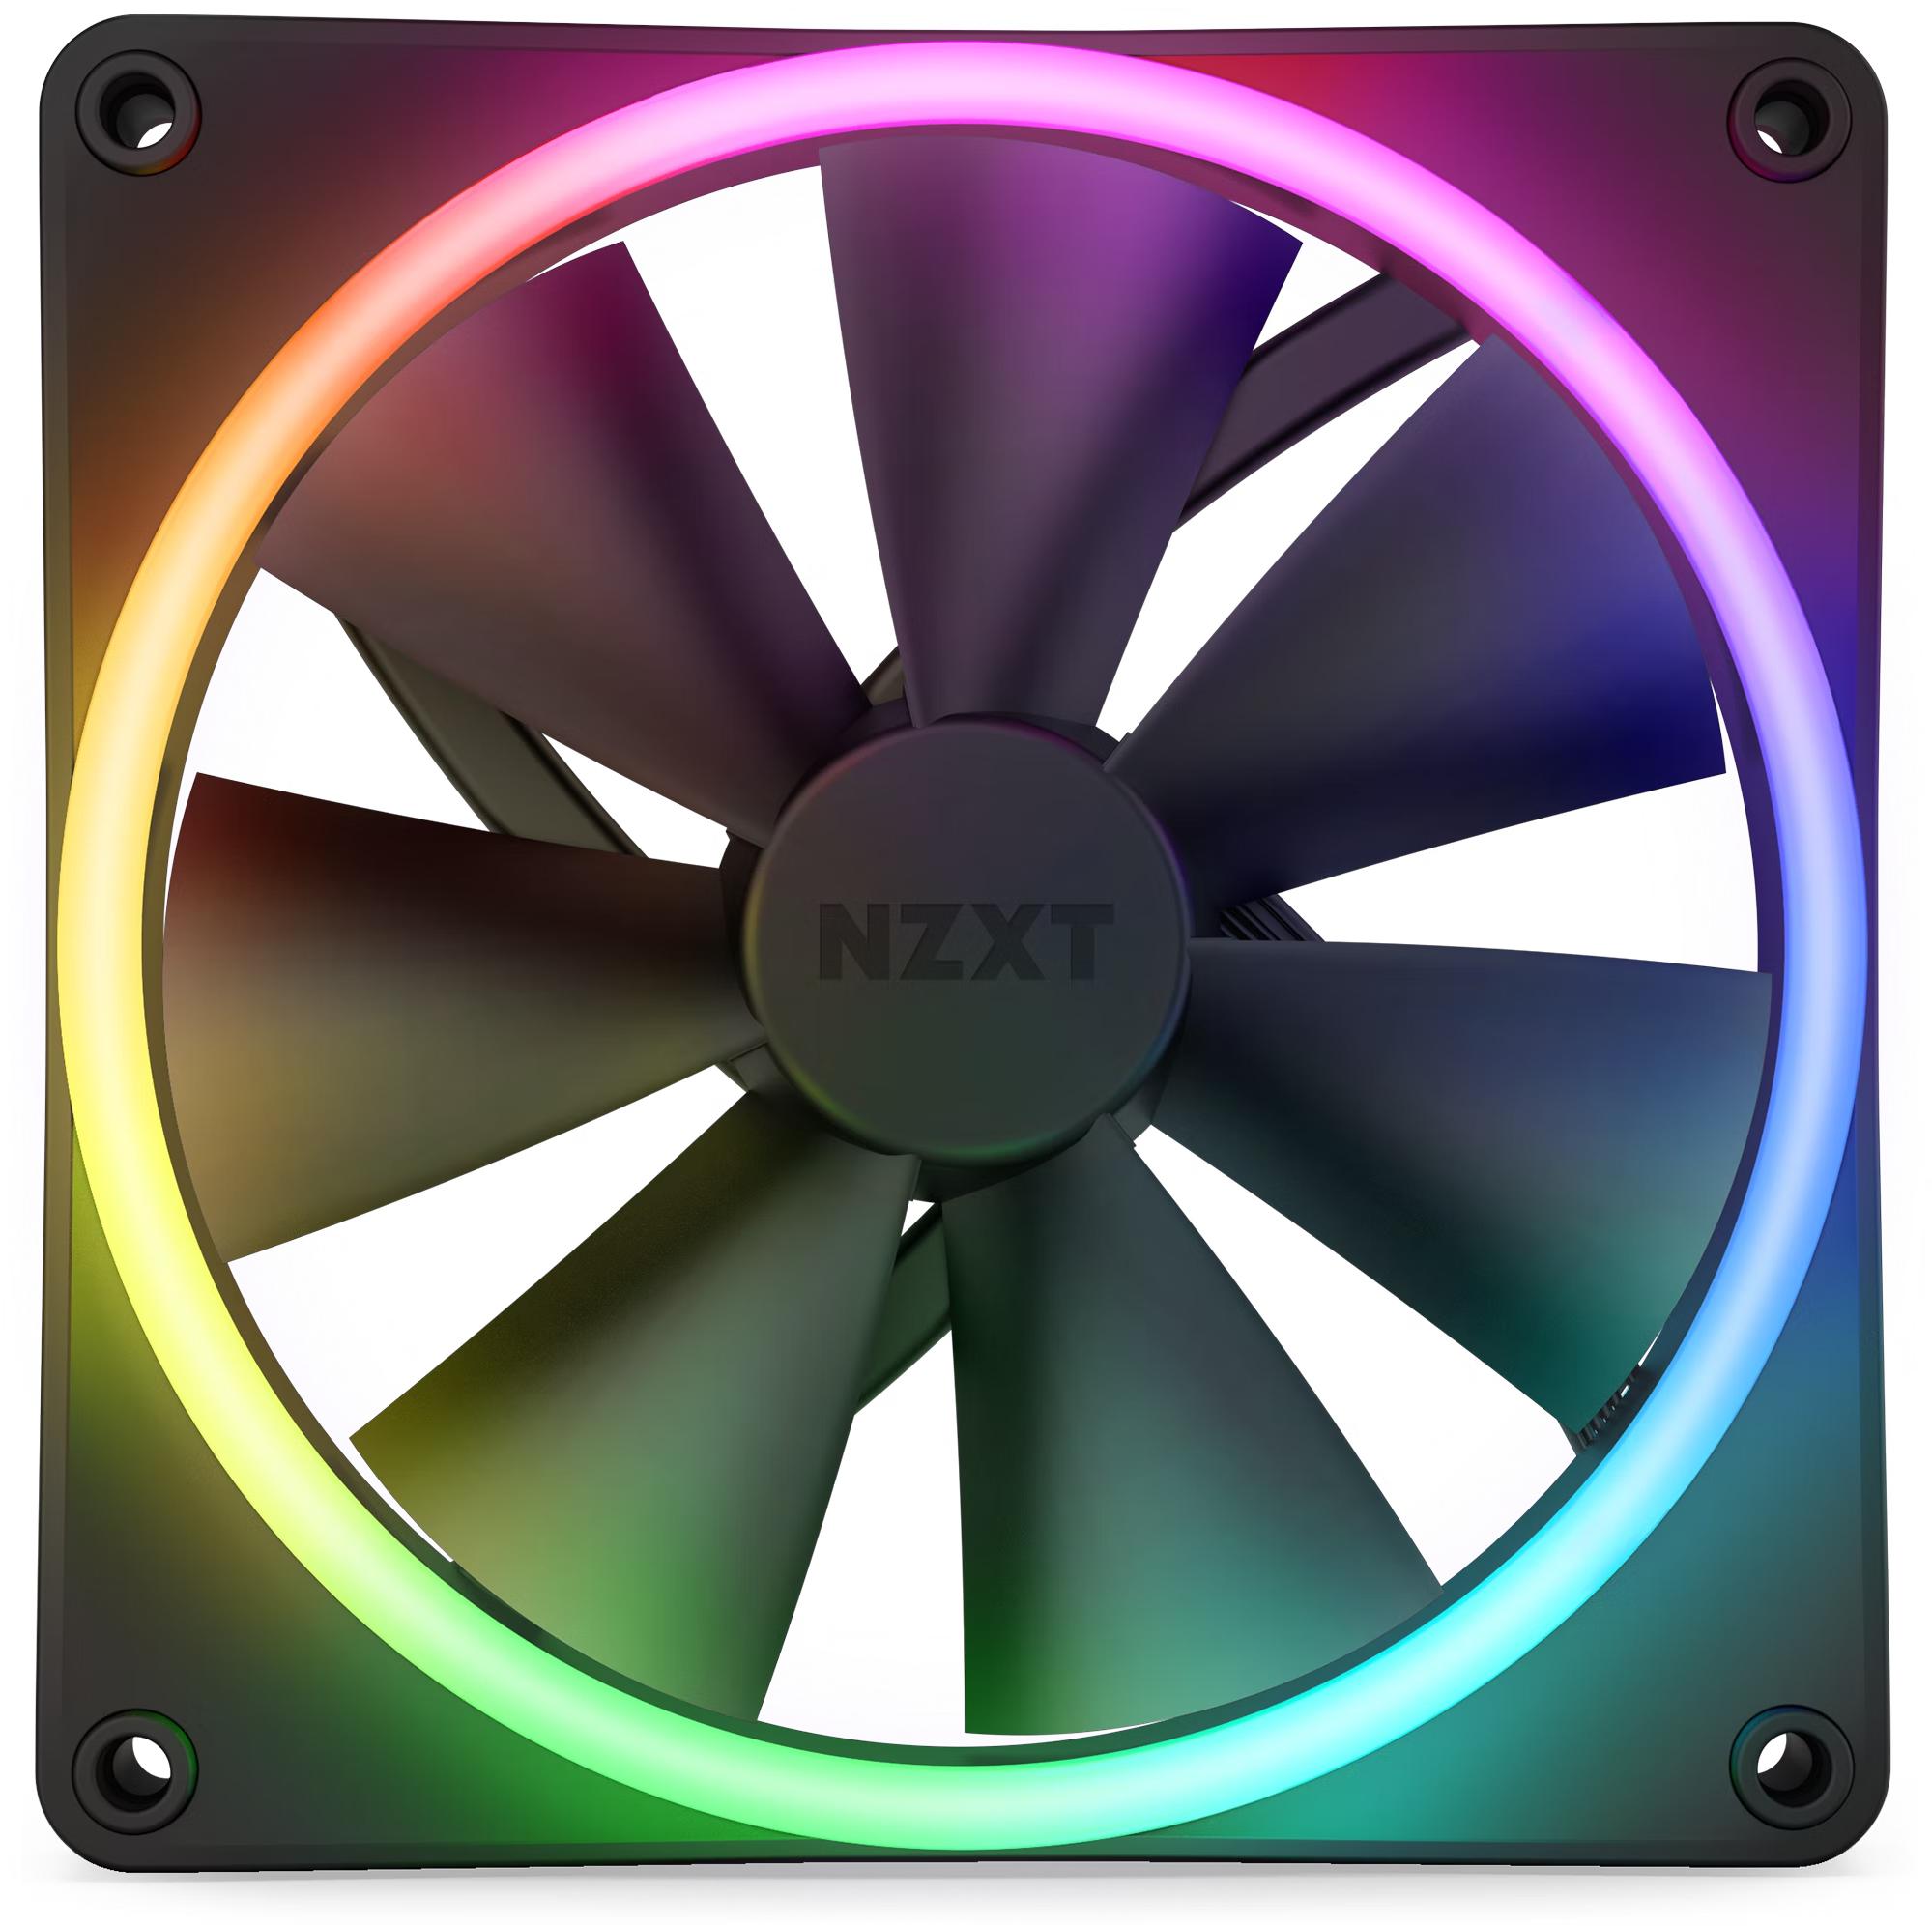 NZXT - Ventoinha NZXT F140 RGB DUO 140mm c/Controlador RGB Preto